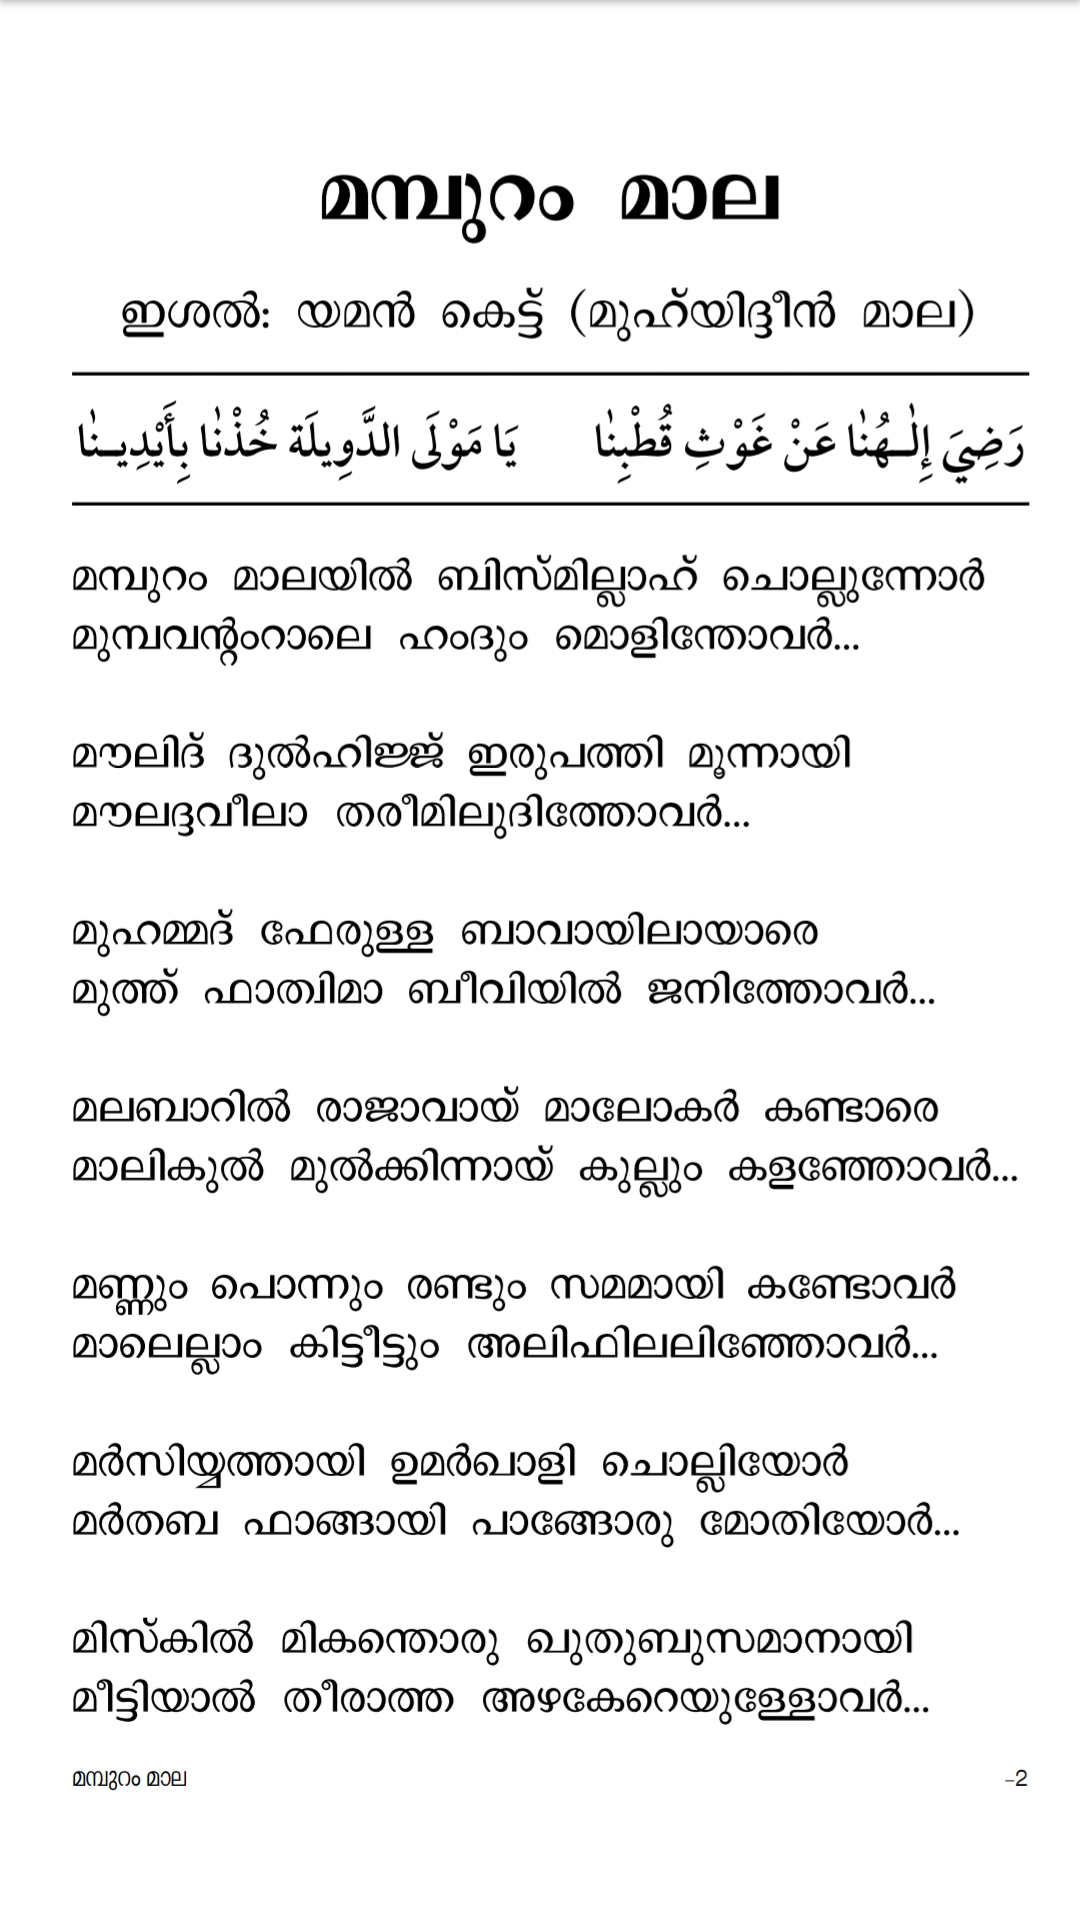 മമ്പുറം മാല വരികളോട് കൂടെ | Mampuram Mala PDF | Noufal Saqafi Thavanur | Fayaz Fazily Thenhipalam